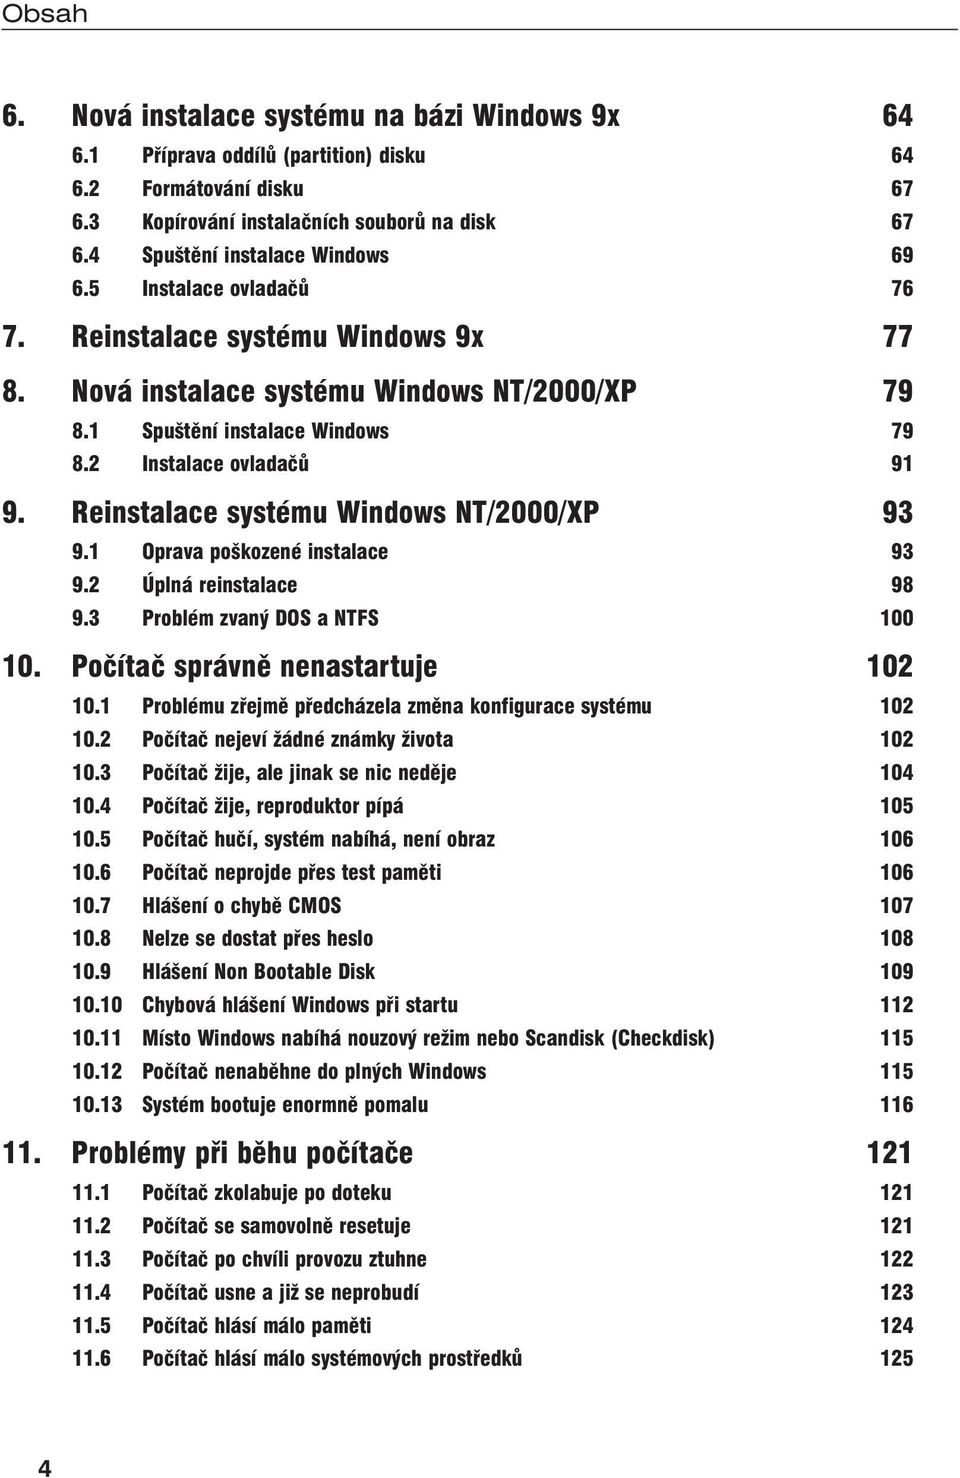 Reinstalace systému Windows NT/2000/XP 93 9.1 Oprava poškozené instalace 93 9.2 Úplná reinstalace 98 9.3 Problém zvaný DOS a NTFS 100 10. Počítač správně nenastartuje 102 10.